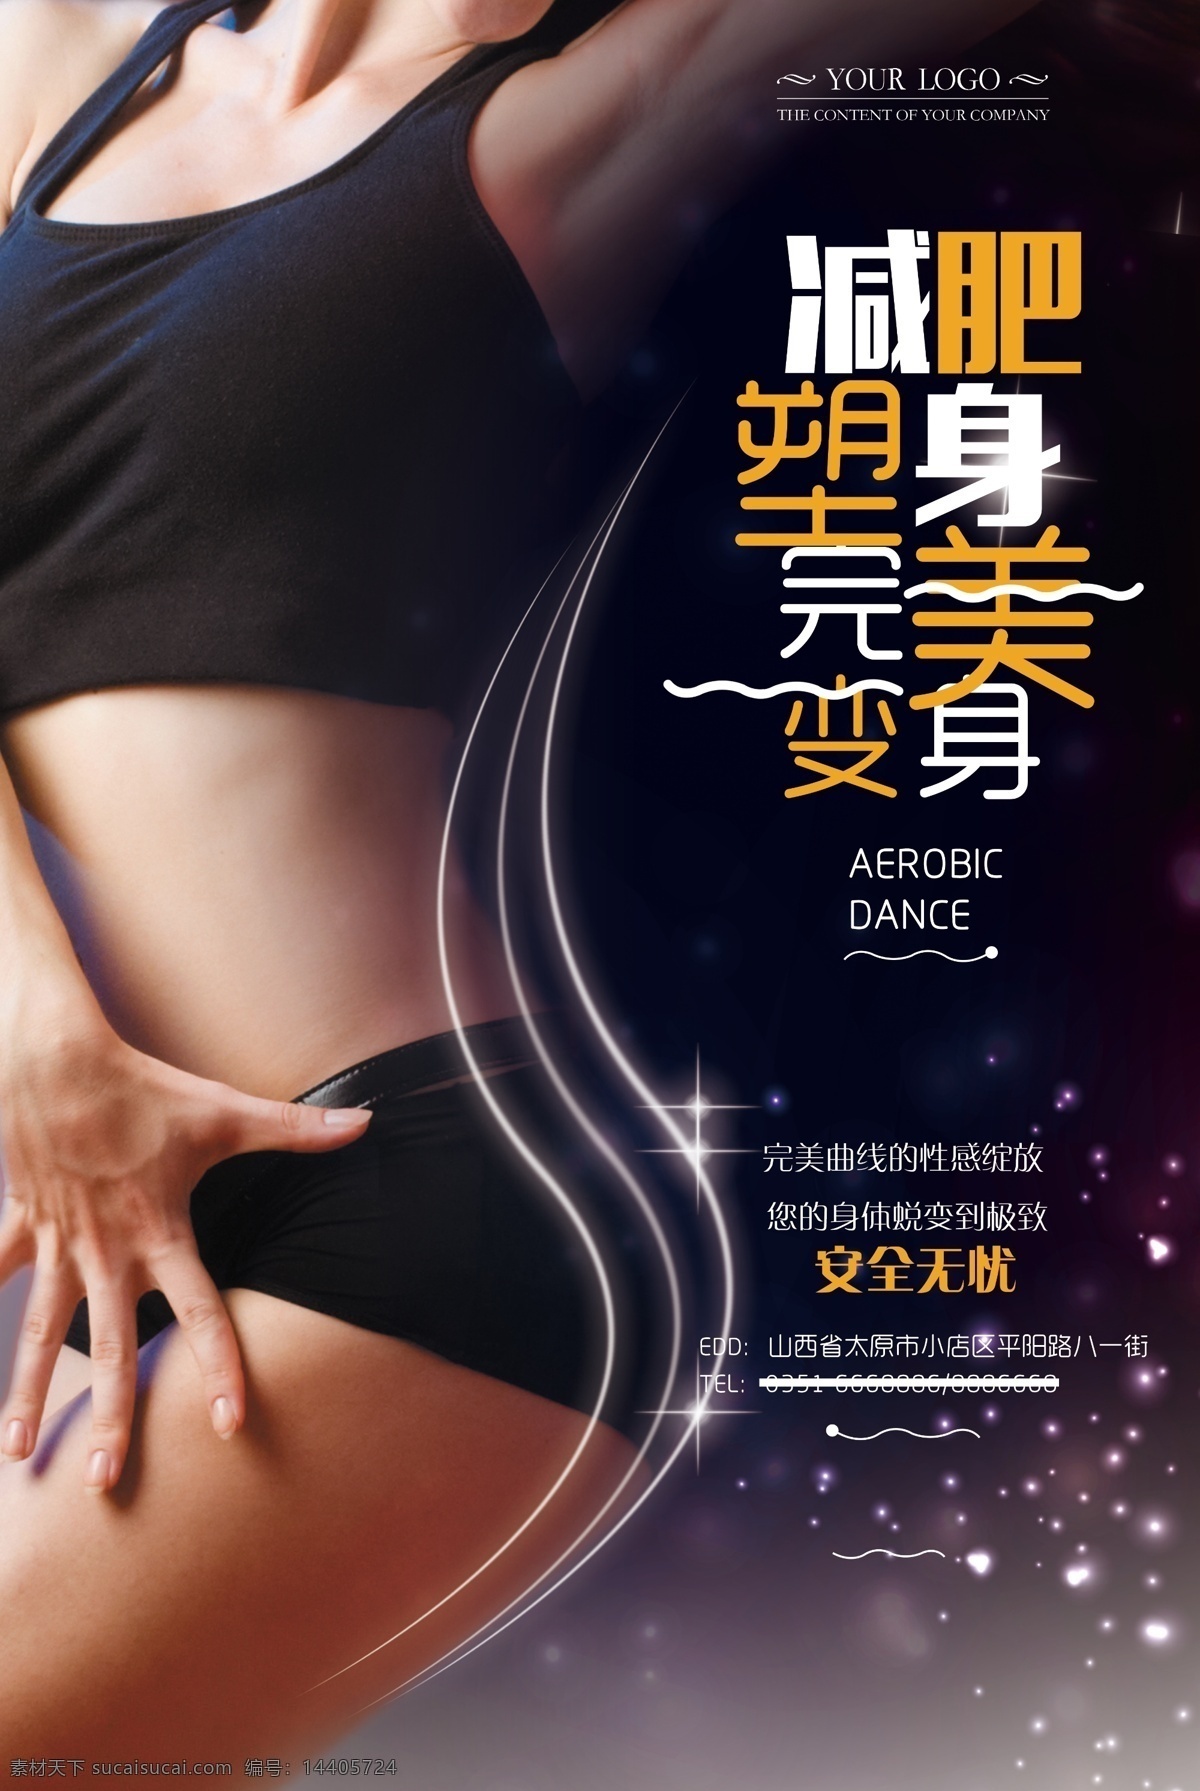 减肥塑身 海报 商业 宣传 减肥 瘦身 塑形 塑身 健身 性感 身材 肥胖 人物